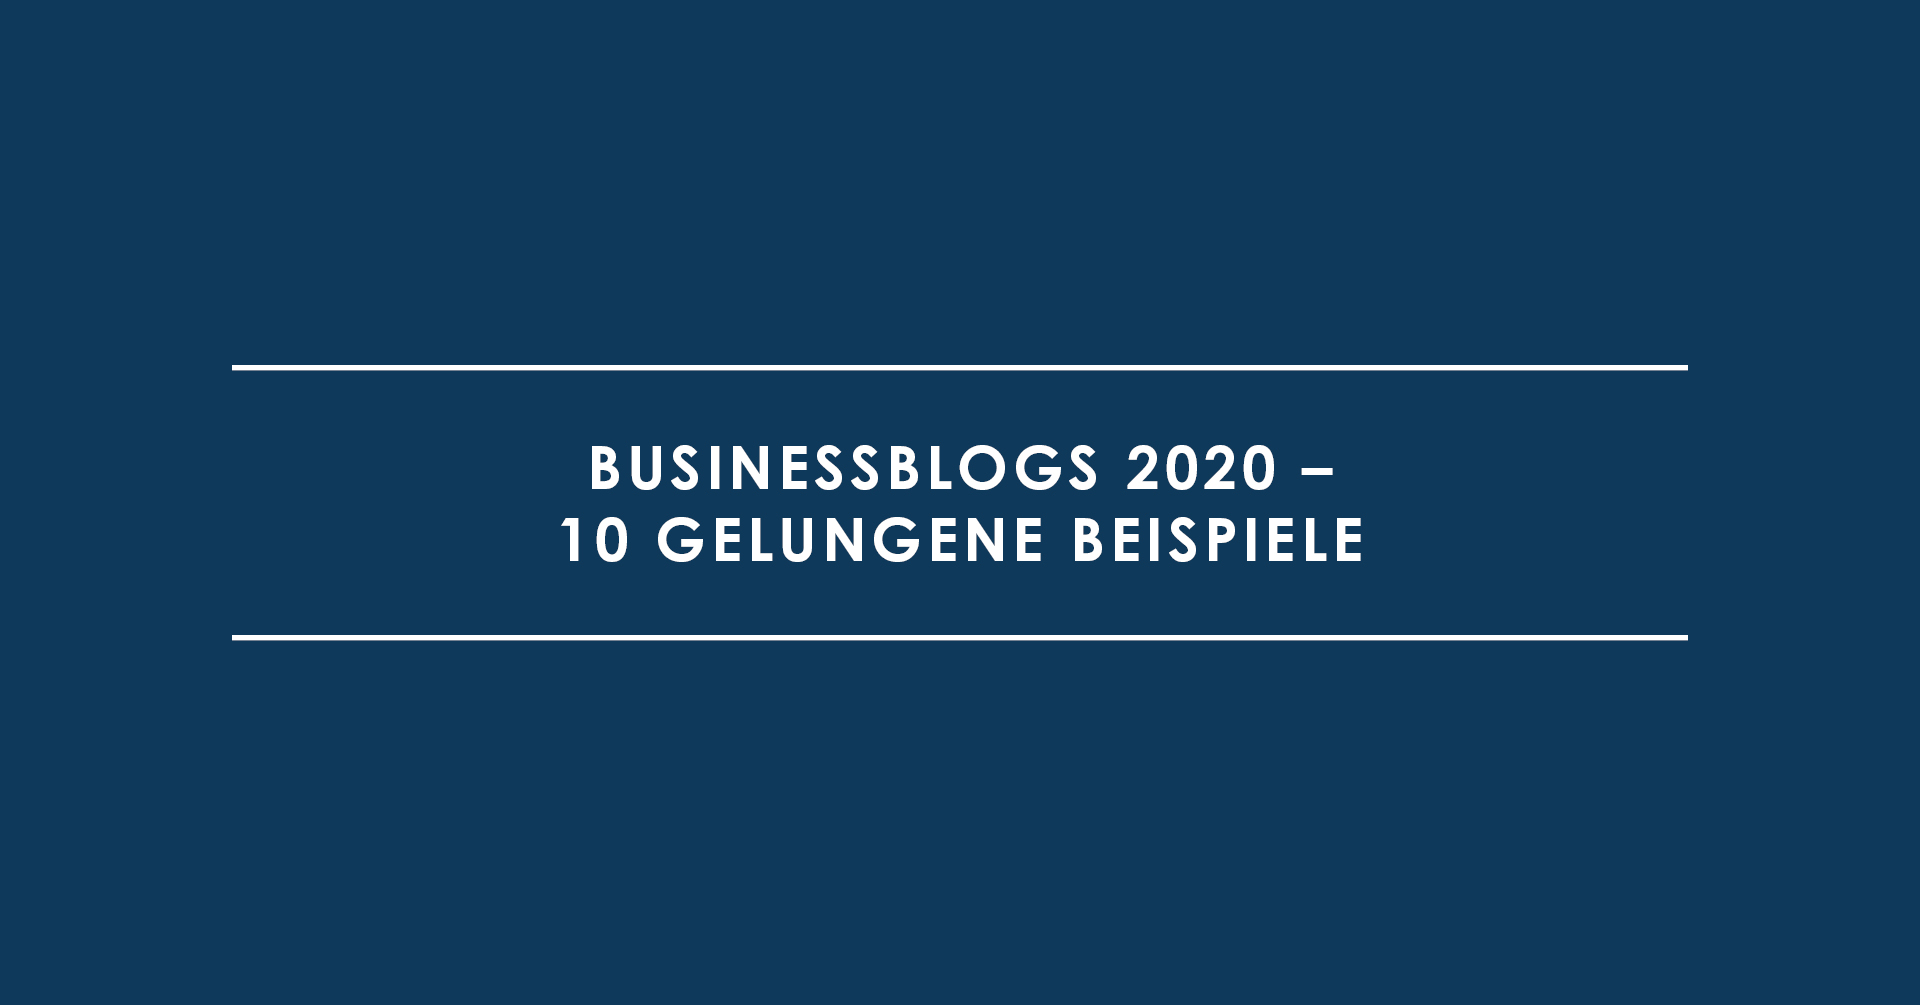 Businessblogs 2020 – 10 gelungene Beispiele